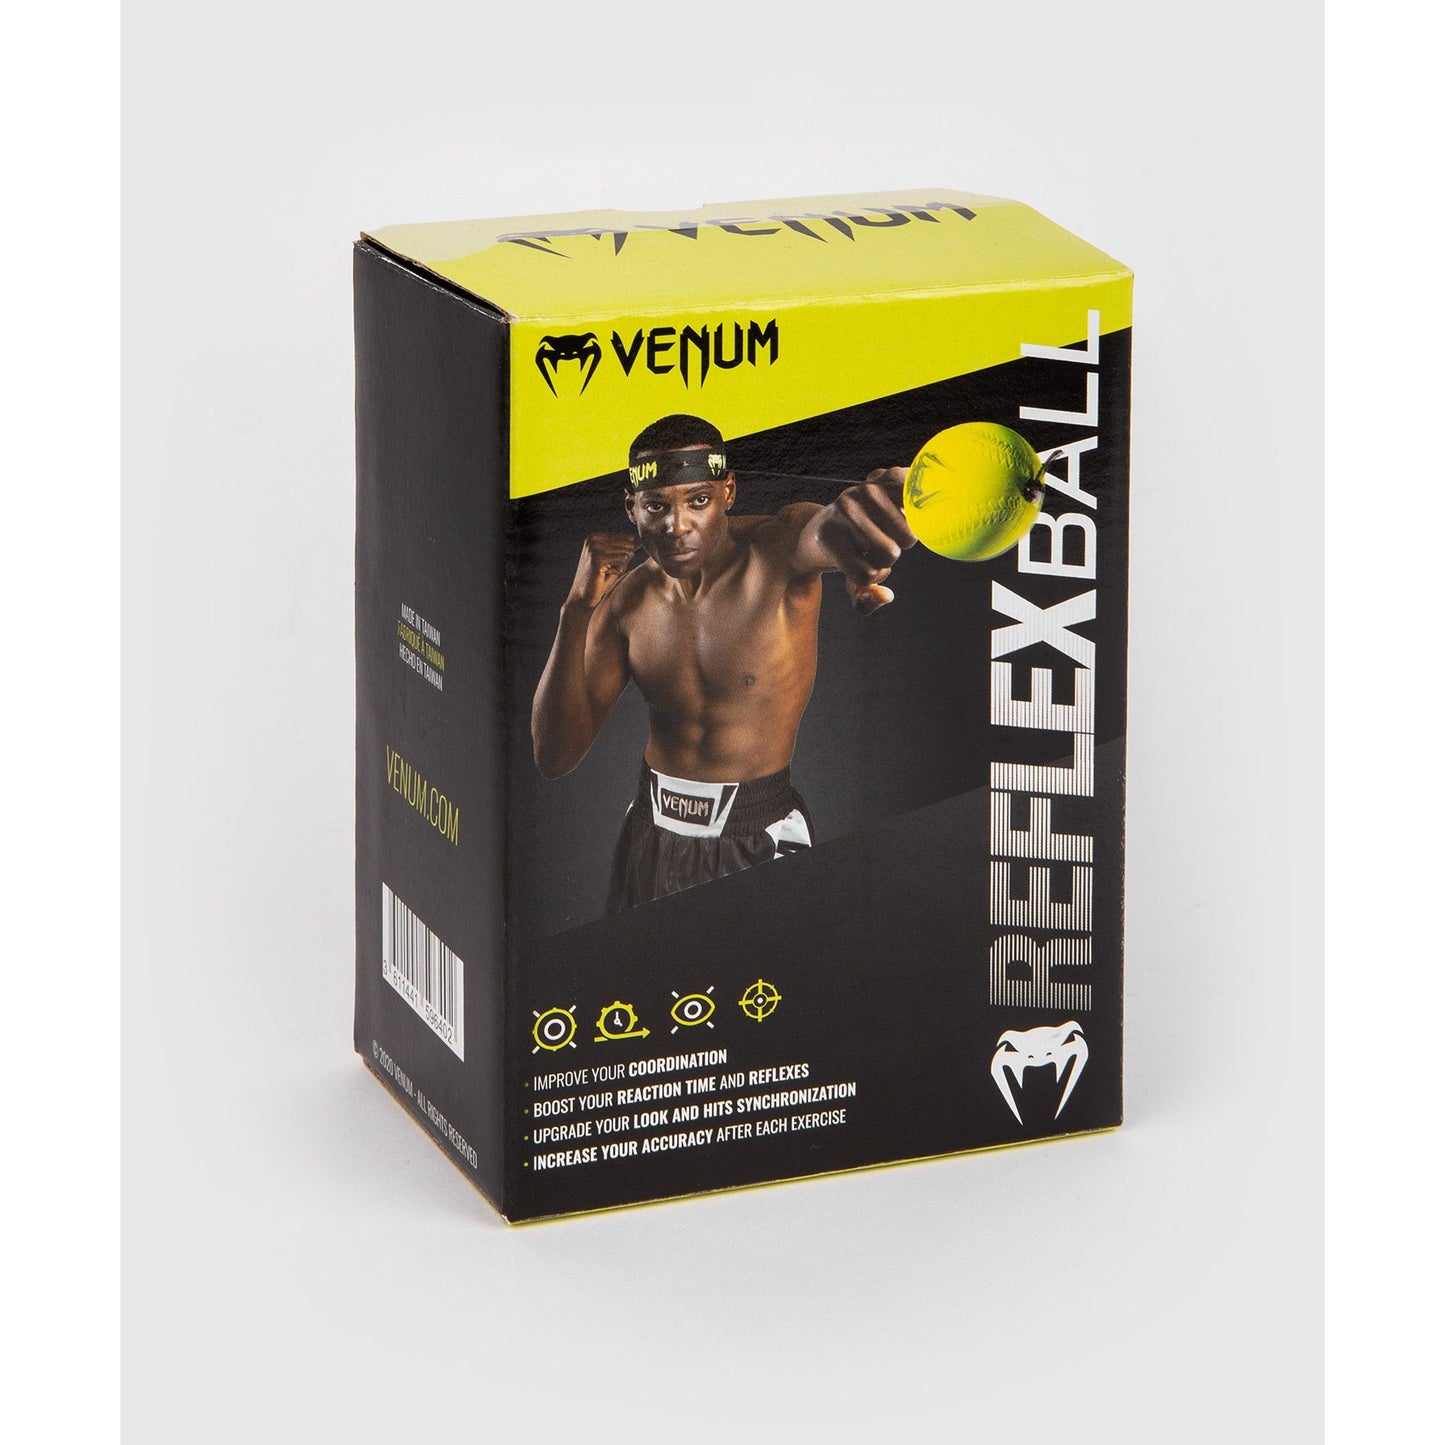 Venum Reflex Ball packaging